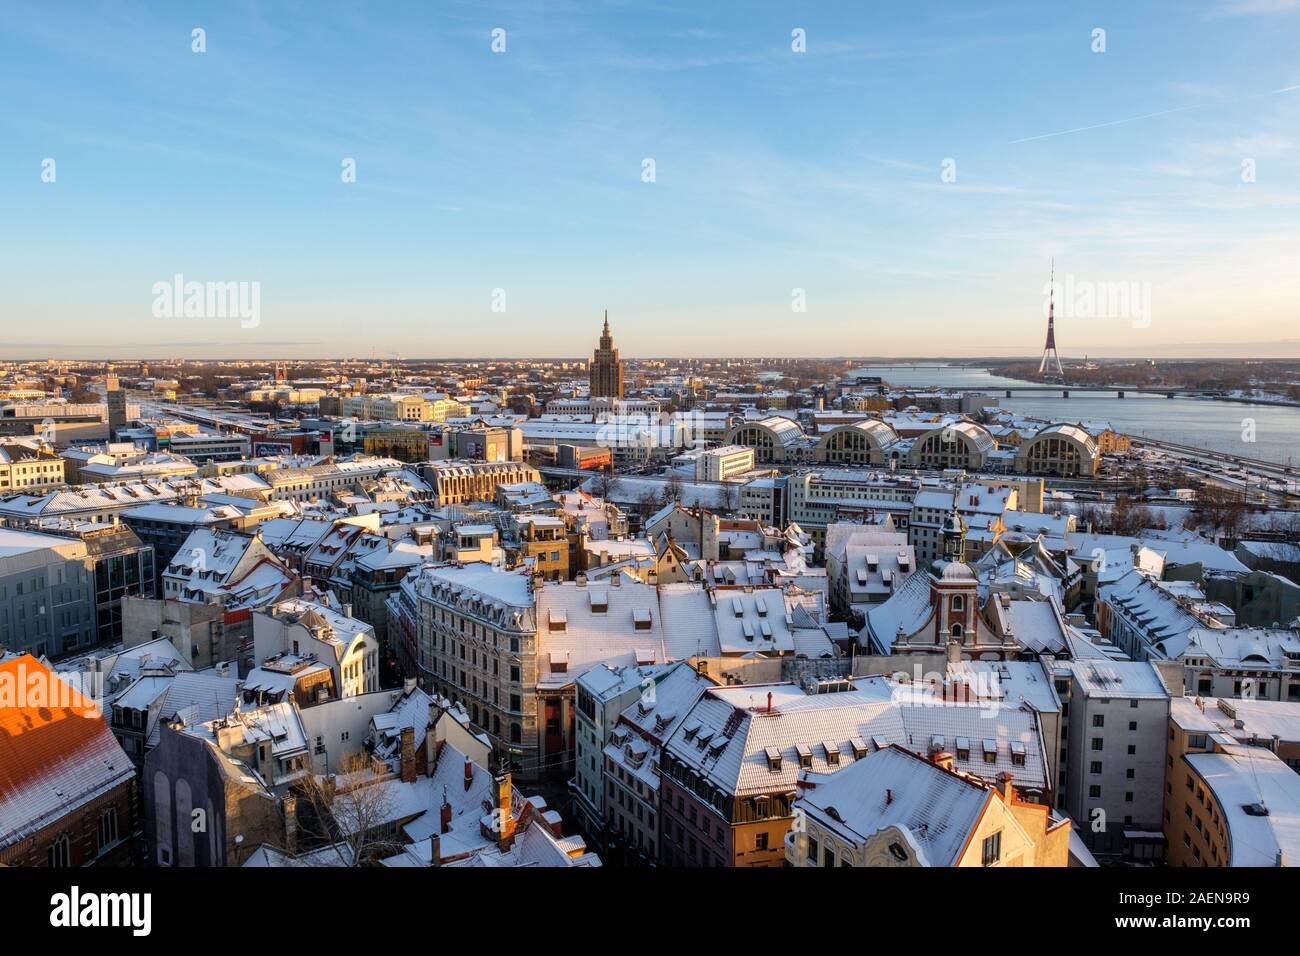 Riga/Lettland - 01. Dezember 2019: Panoramablick auf die Altstadt von Riga, Lettland im Winter Tag. Luftaufnahme von St. Peter's Cathedral auf Riga Markt Stockfoto